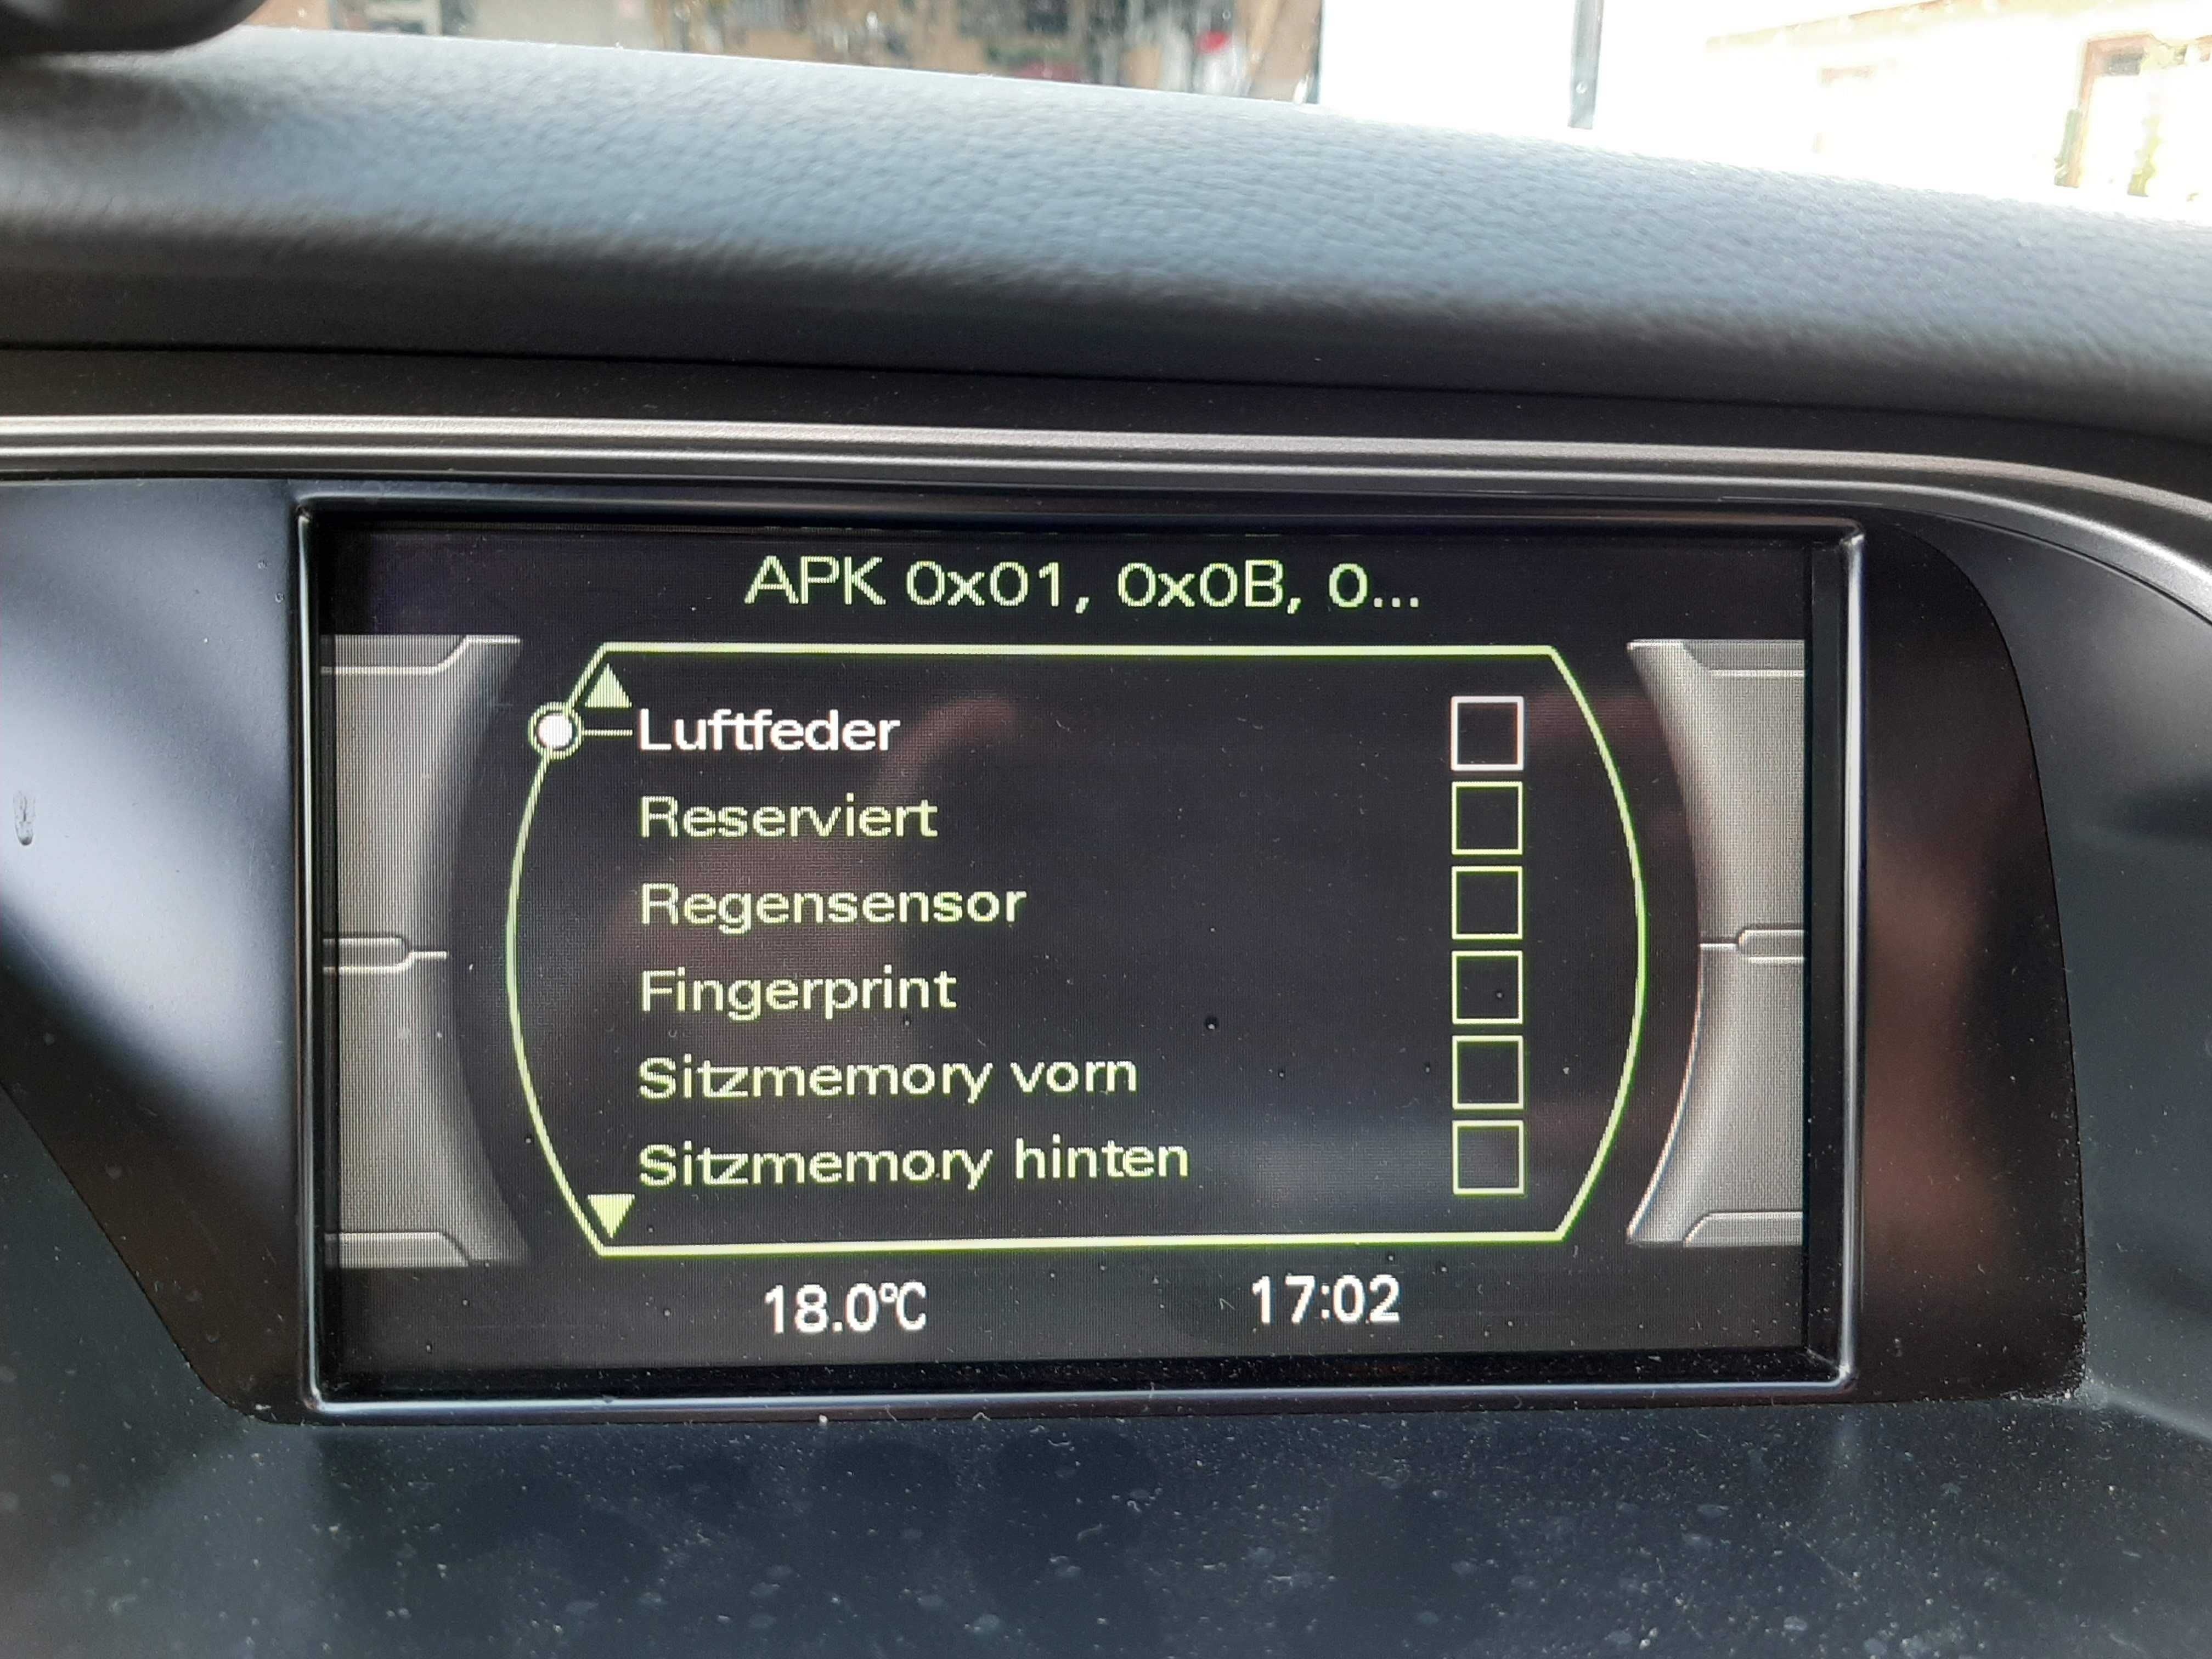 Naprawa Nawigacji, menu, Audi MMI 2G 3G MIB w A4 A6 Q5 A4 A5 Q7 A8